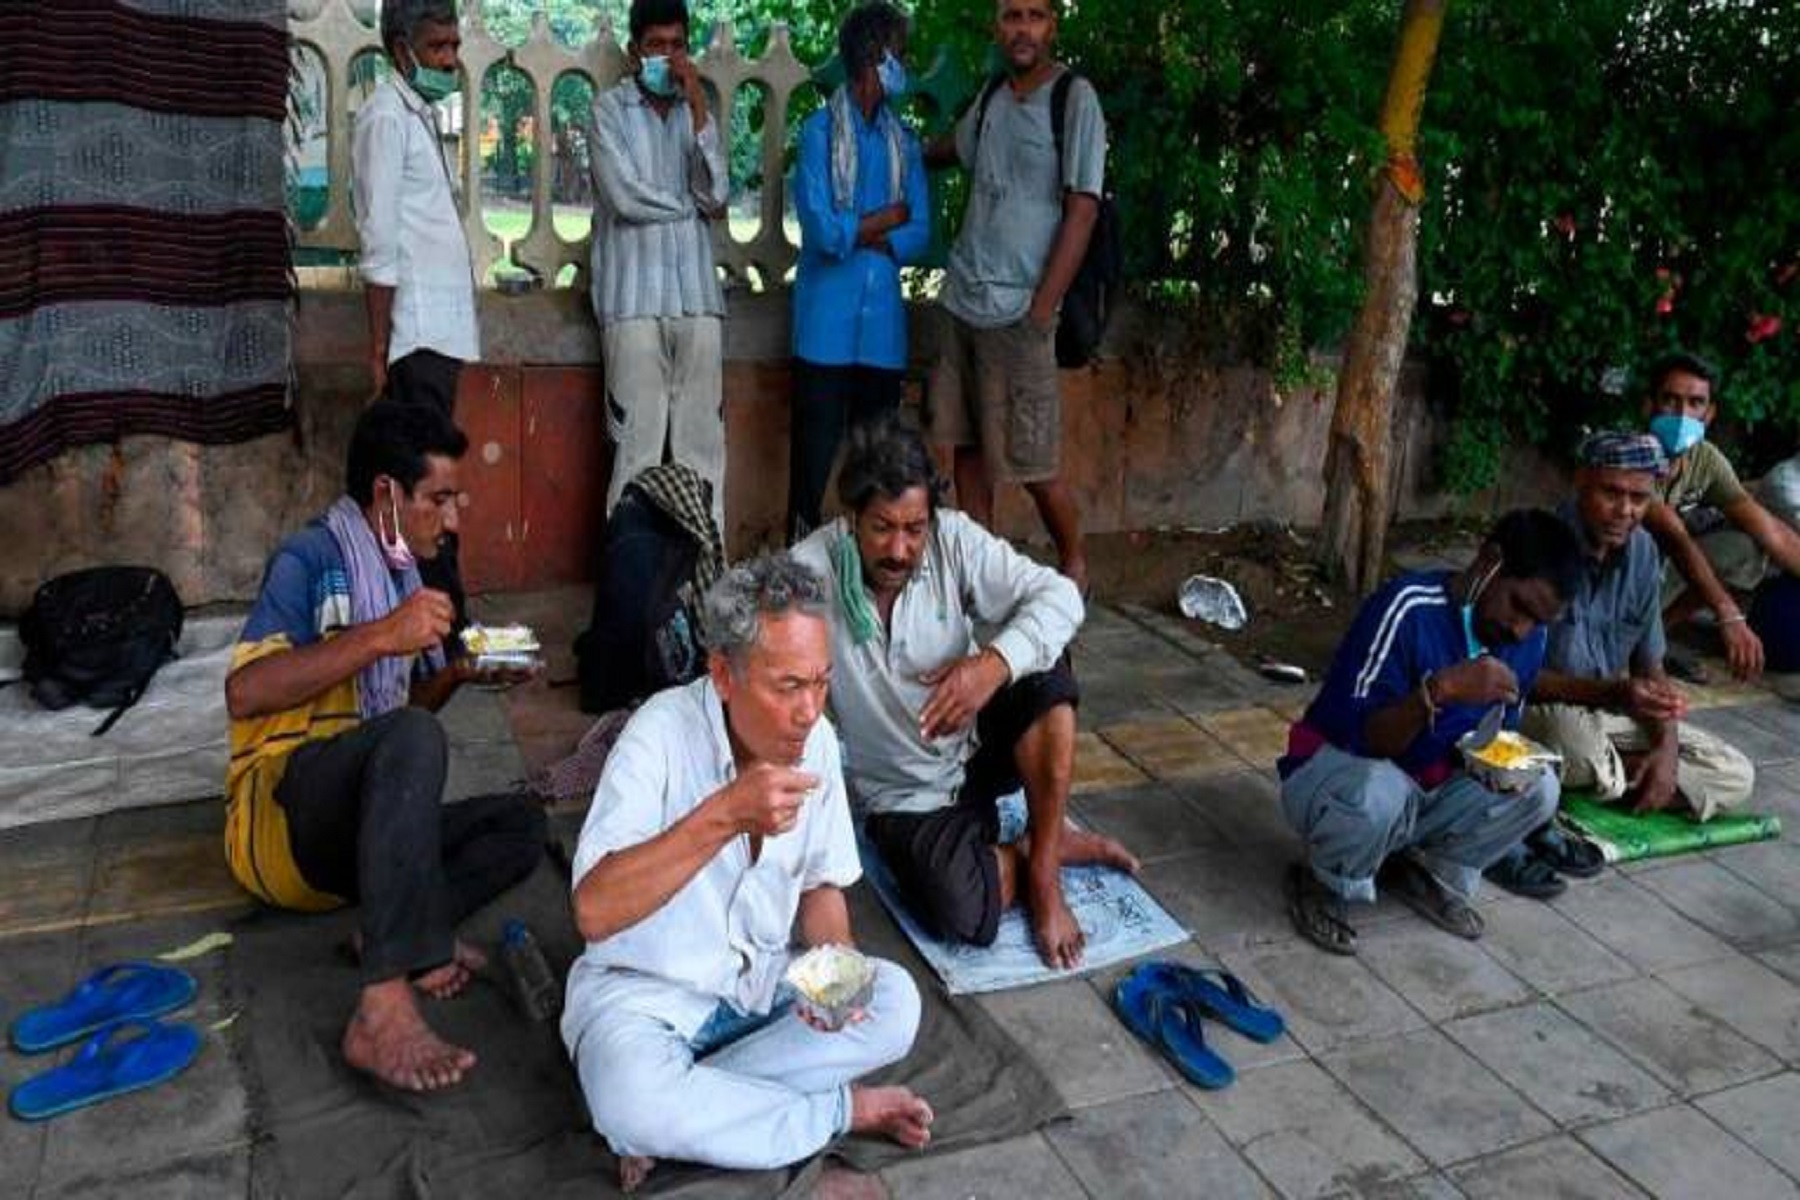 Ινδία Πανδημία: Το κύμα κορωνοϊού έχει ωθήσει εκατομμύρια ινδικές οικογένειες σε φτώχεια και πείνα